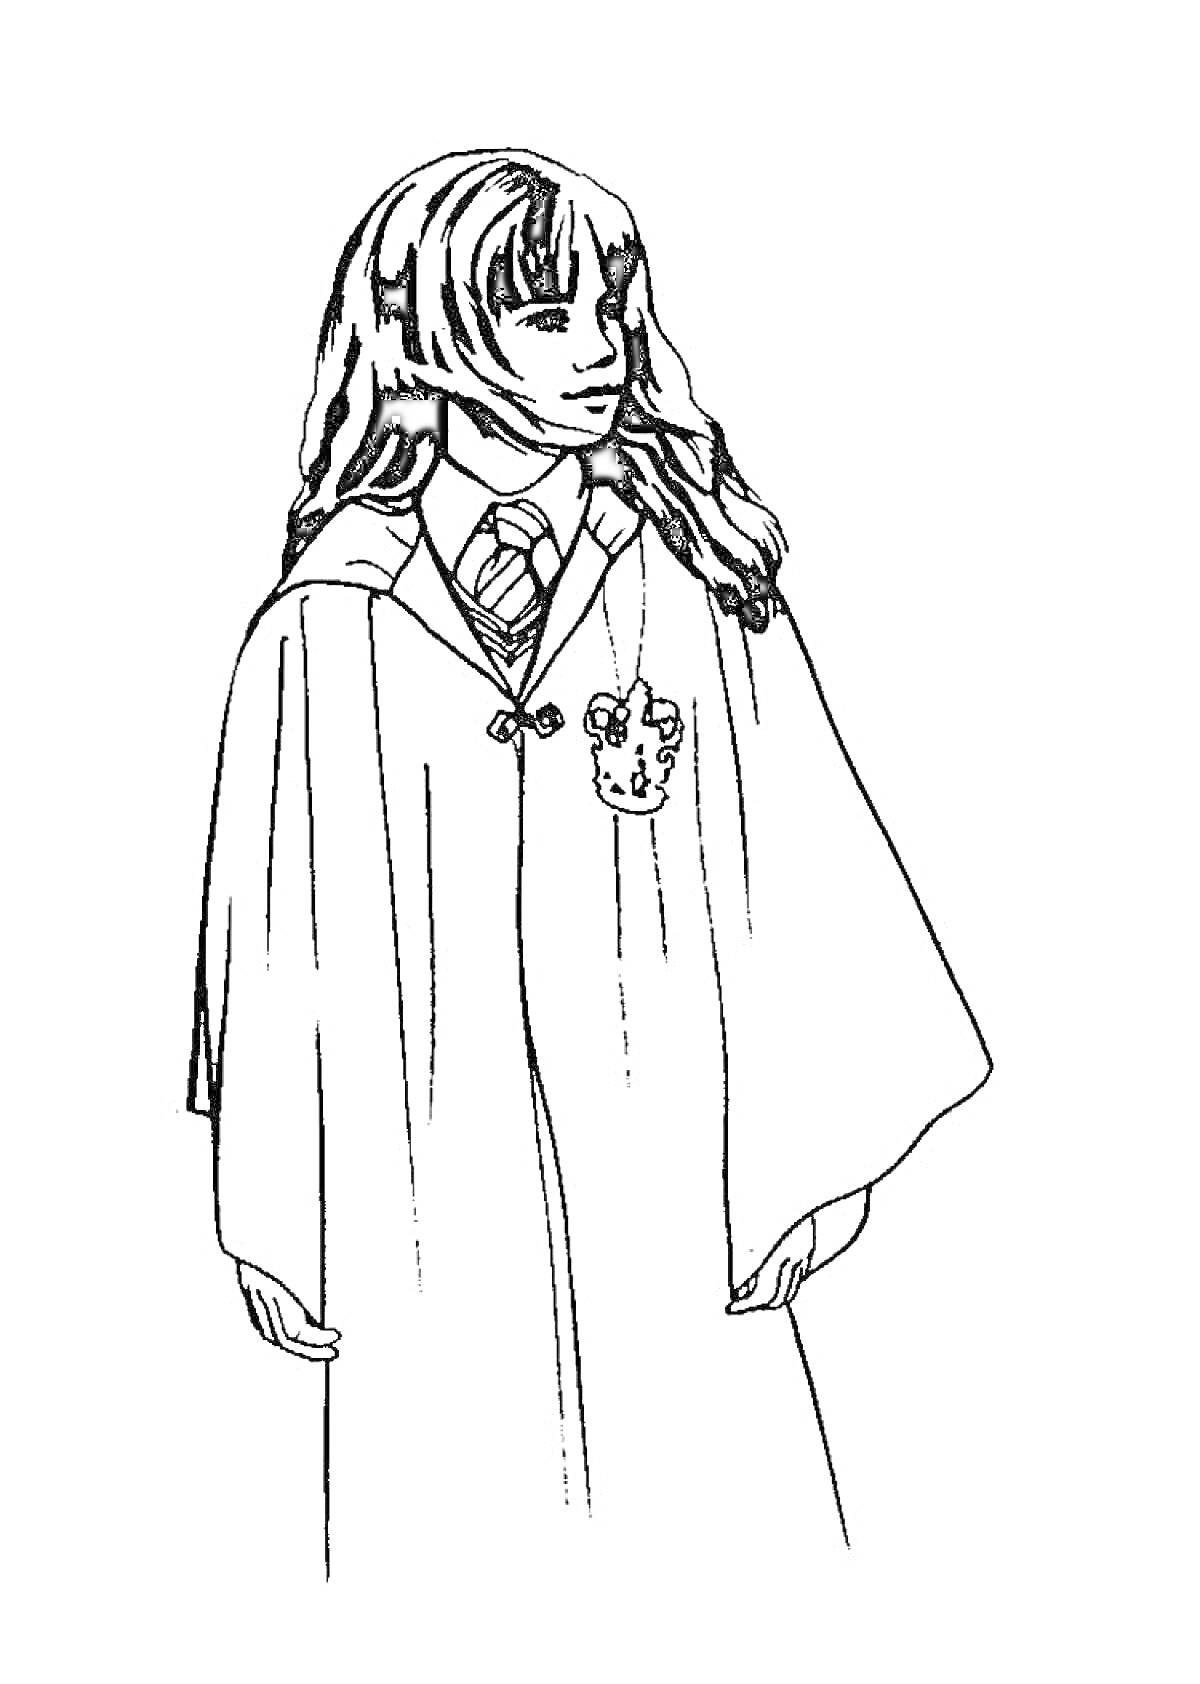 Раскраска Девушка в длинной мантии с гербом, галстуком в полоску, длинными волосами и значком